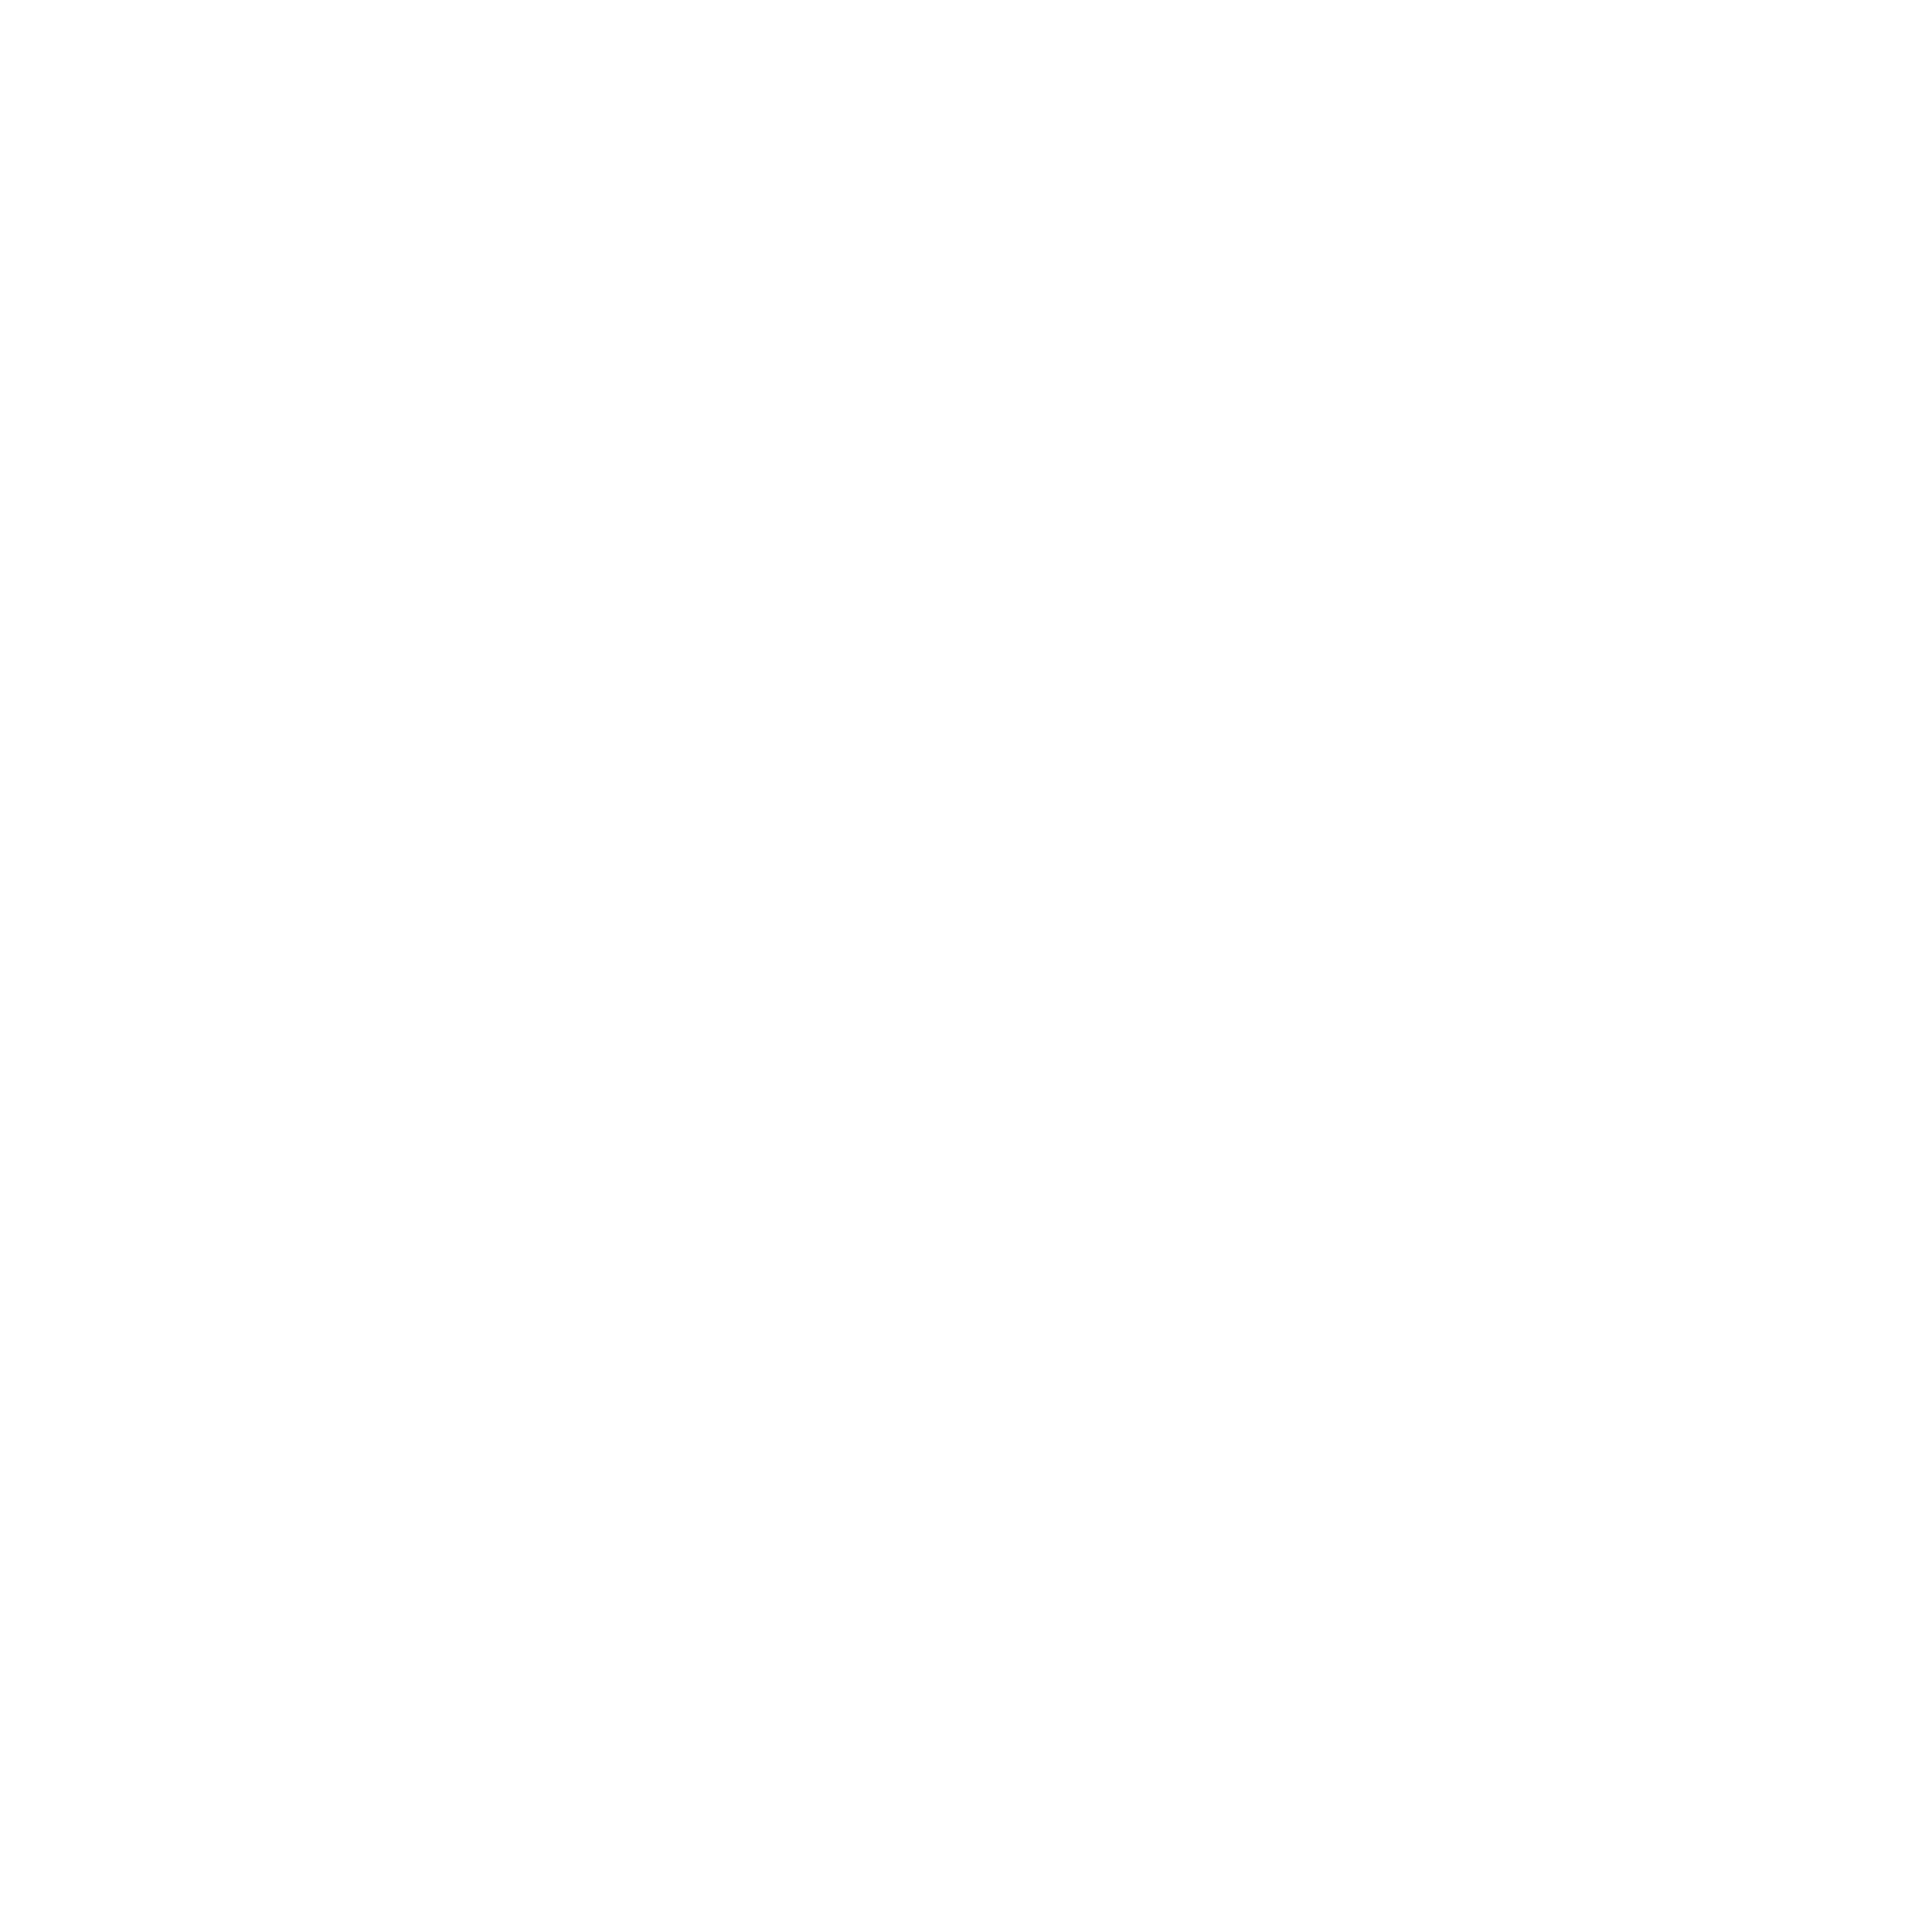 hi-tec-1-logo-png-transparent.png